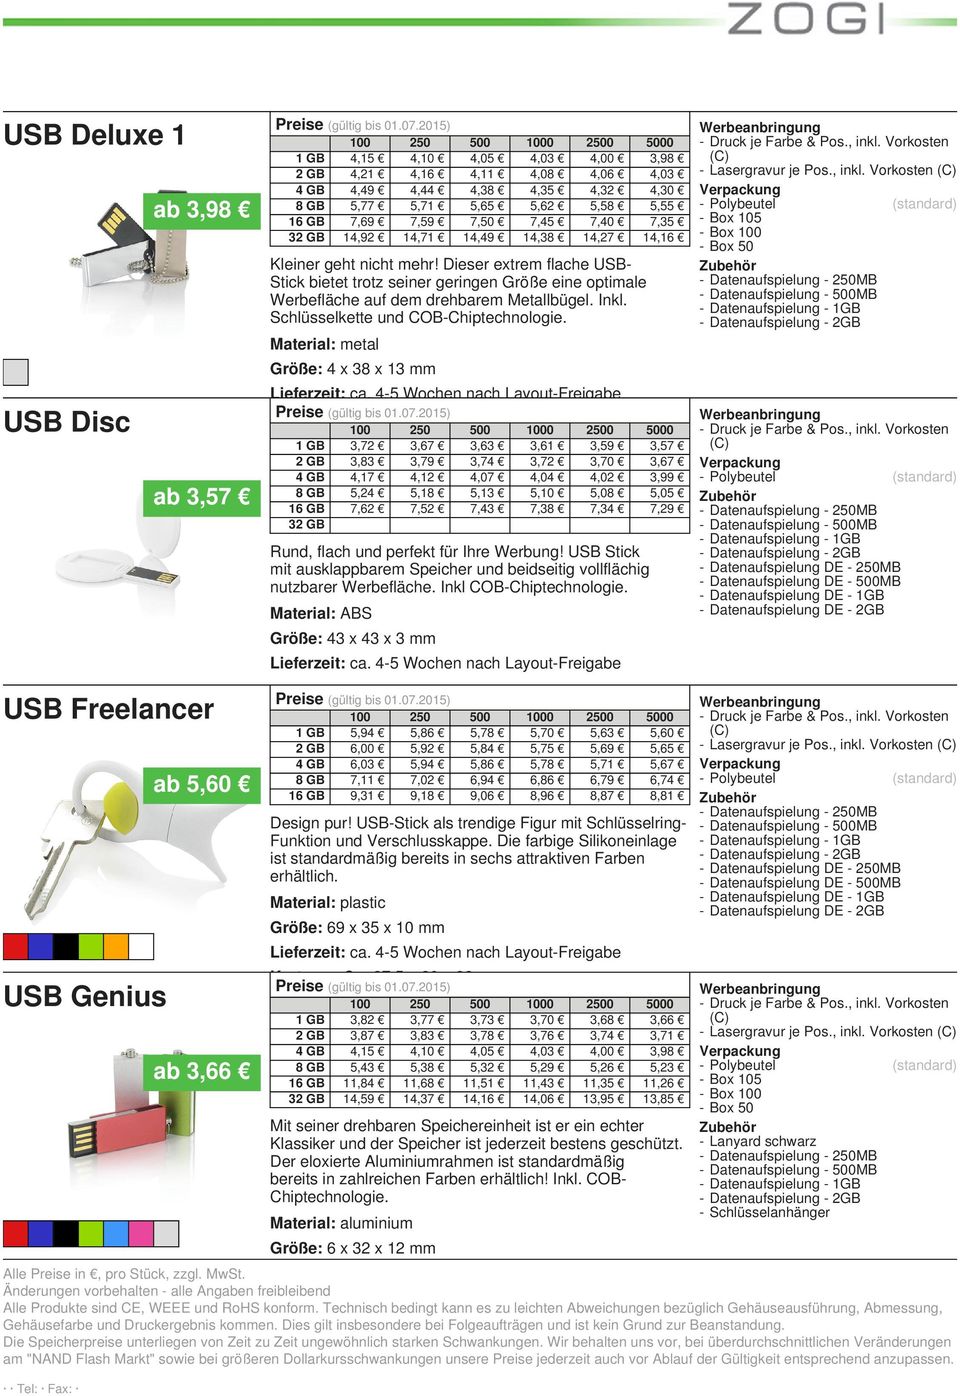 Schlüsselkette und COB-Chiptechnologie. - Lasergravur je Pos., inkl. Vorkosten - Box - Datenaufspielung - MB - Datenaufspielung - MB Größe: 4 x 38 x 13 mm Preise (gültig bis 4901.07.